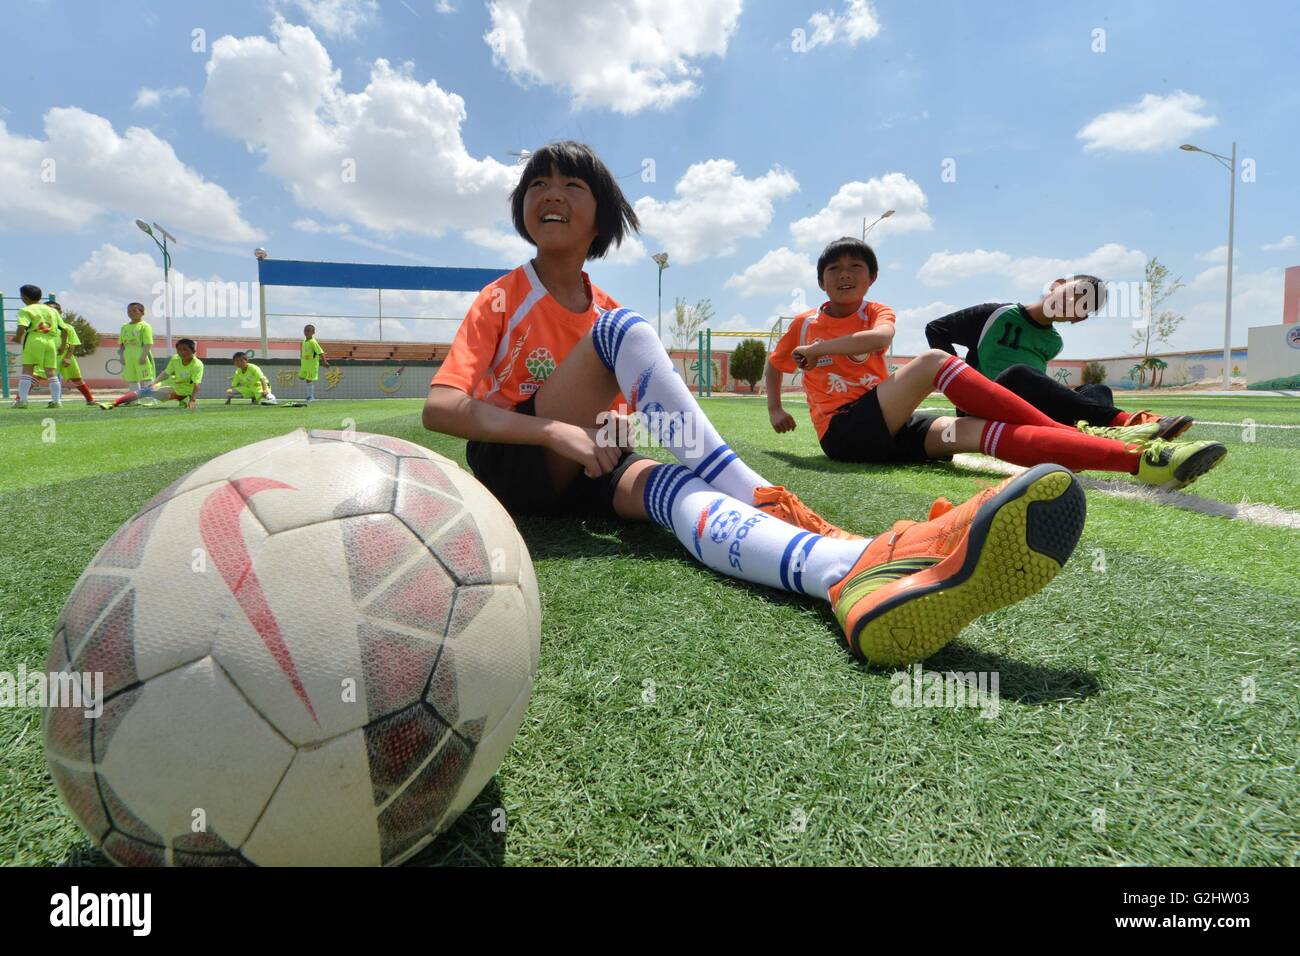 (160601)--LANZHOU, 1. Juni 2016 (Xinhua)--junge Mädchen der Schulteam vorbereiten, an ein Fußballspiel im Zhonglianchuan Primary School Fußball spielen nach der Schule in Yuzhong Grafschaft, Nordwesten Chinas Provinz Gansu, 31. Mai 2016 teilzunehmen. Fußball bereichert Kinder Alltag an der Schule in den Bereichen ländliche Plateau auf einer Höhe von mehr als 2.300 Metern befindet. Viele Kinder haben die Möglichkeit zur Teilnahme an Fußball-Spiele in den großen Städten. Schulleiter Ma Anwu zu hoffen, dass Fußball mehr ländlichen Studenten Schritt aus den Bergen helfen könnte. Mittwoch ist Internationaler Kindertag. Stockfoto